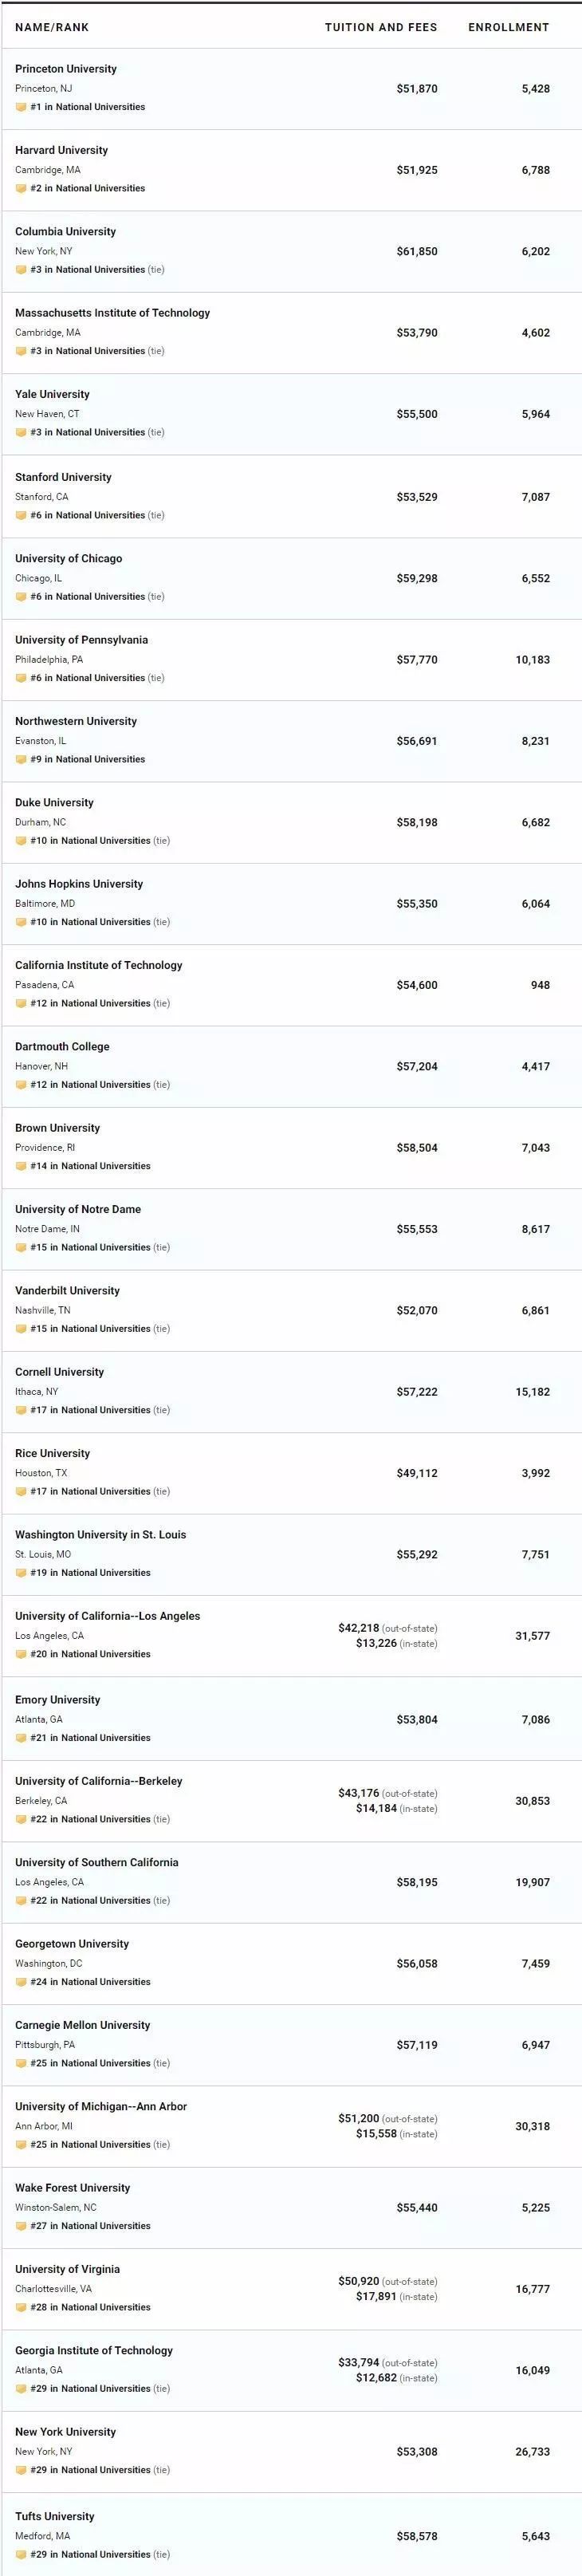 2020年美国usnew大学排名_2020年QS世界大学排名&USNews美国大学排名